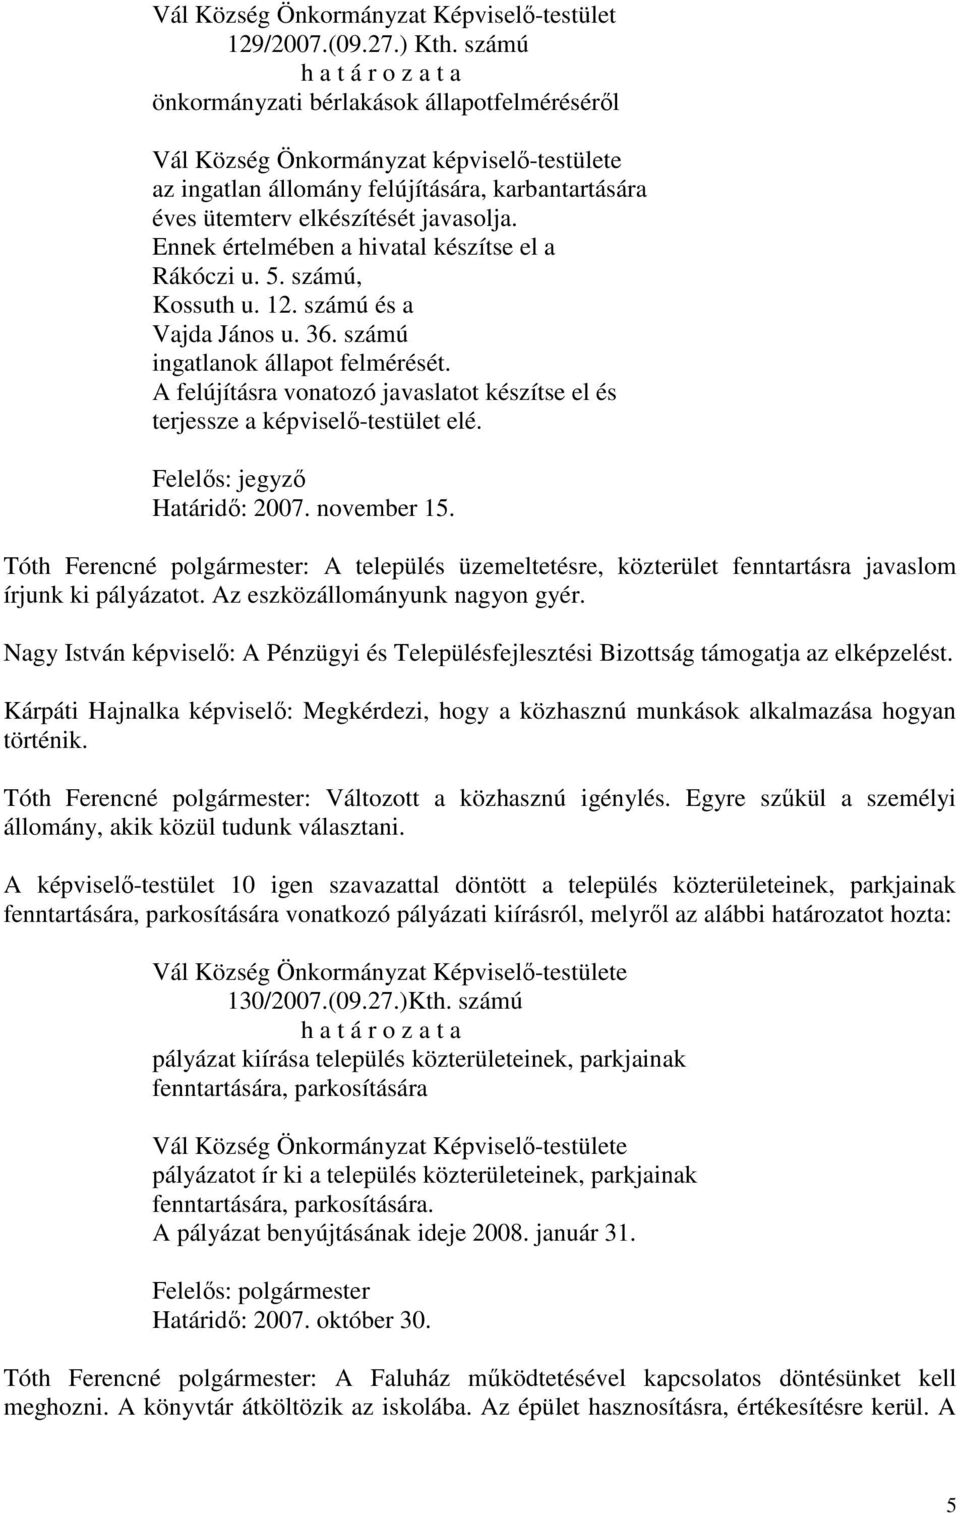 Ennek értelmében a hivatal készítse el a Rákóczi u. 5. számú, Kossuth u. 12. számú és a Vajda János u. 36. számú ingatlanok állapot felmérését.